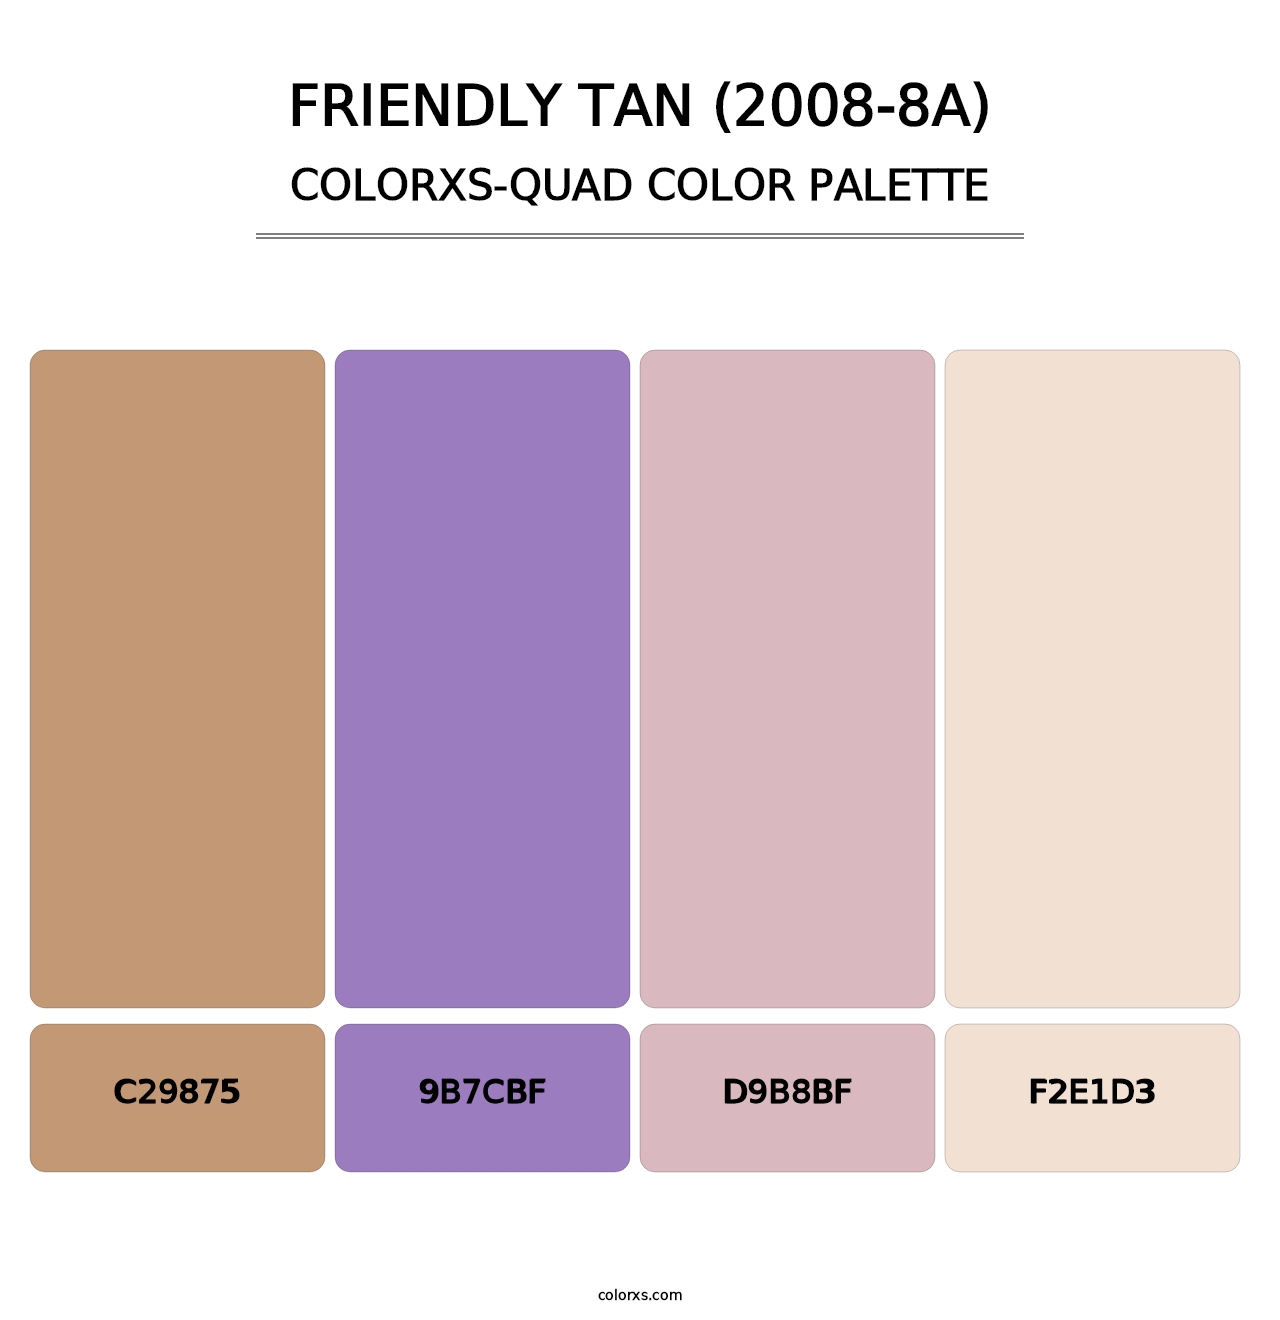 Friendly Tan (2008-8A) - Colorxs Quad Palette